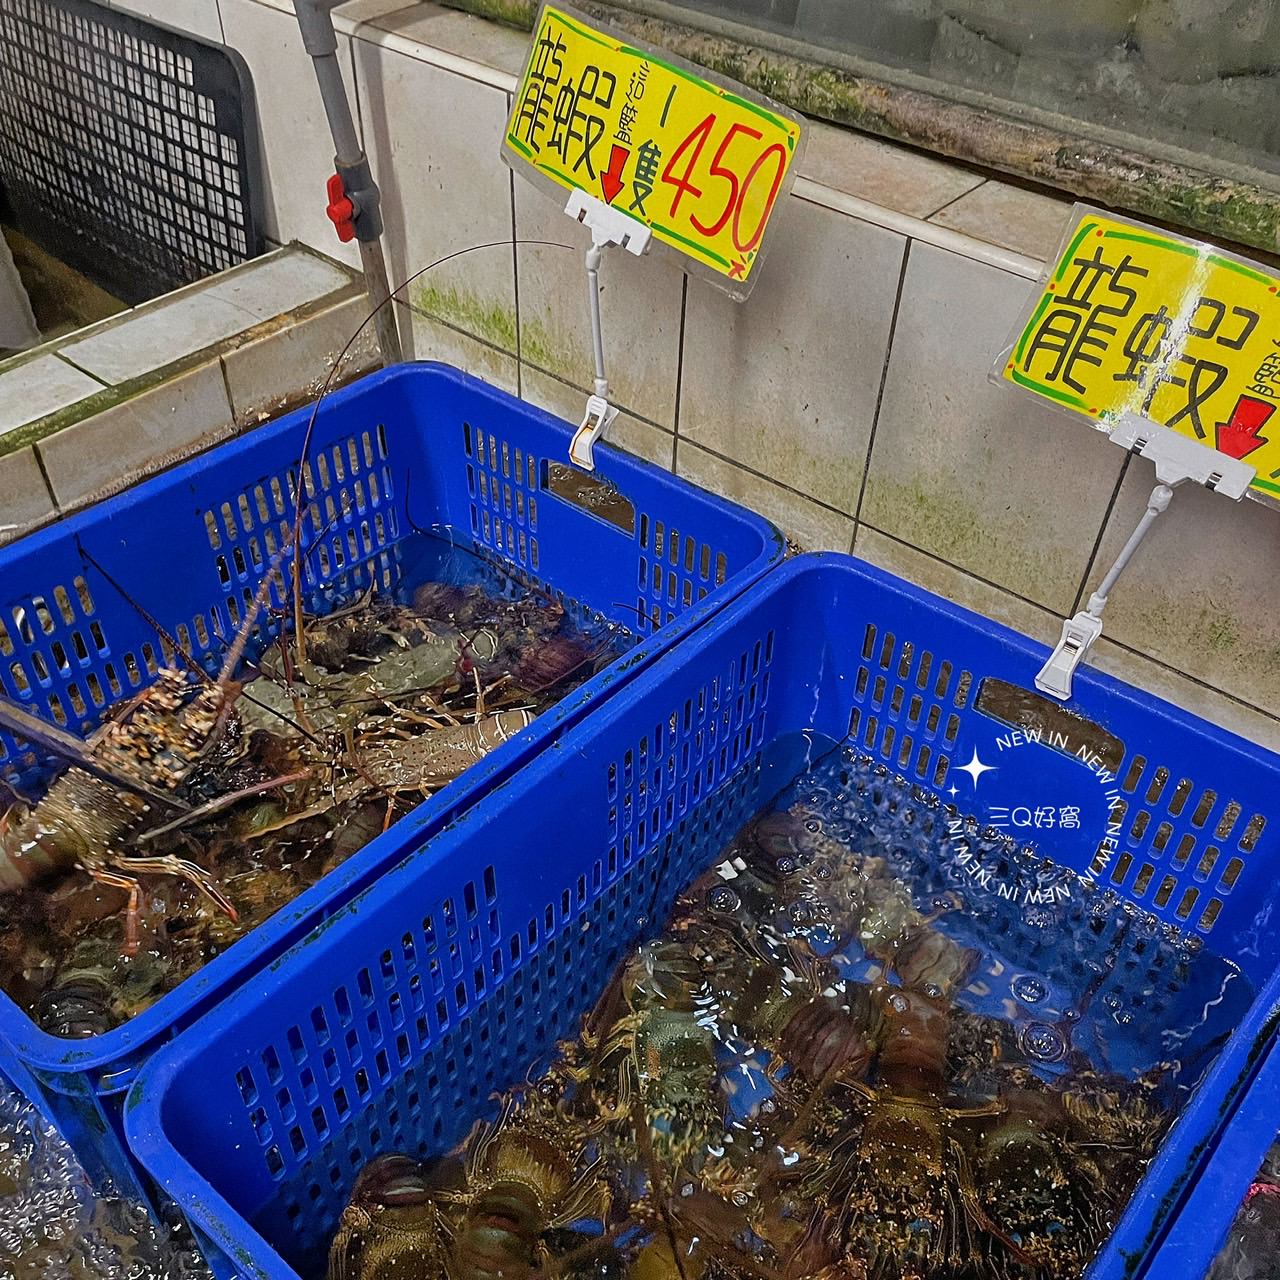 055龍蝦海鮮餐廳 必吃超人氣龍蝦料理 花蓮壽豐高CP值餐廳